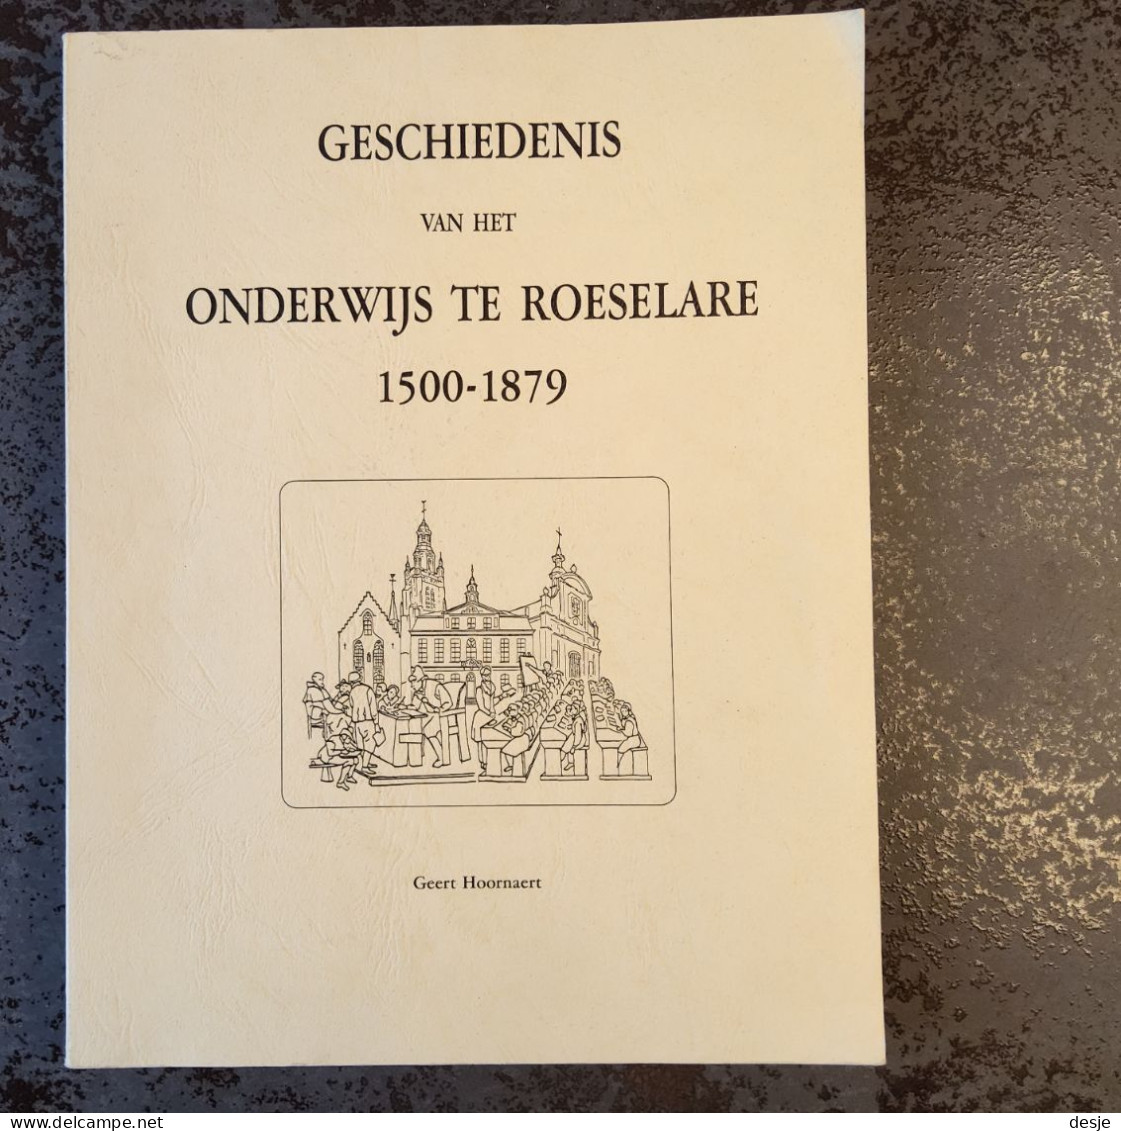 Geschiedenis Van Het Onderwijs Te Roeselare 1500-1879 Door Geert Hoornaert, 1990, Roeselare, 209 Blz. - Antiguos